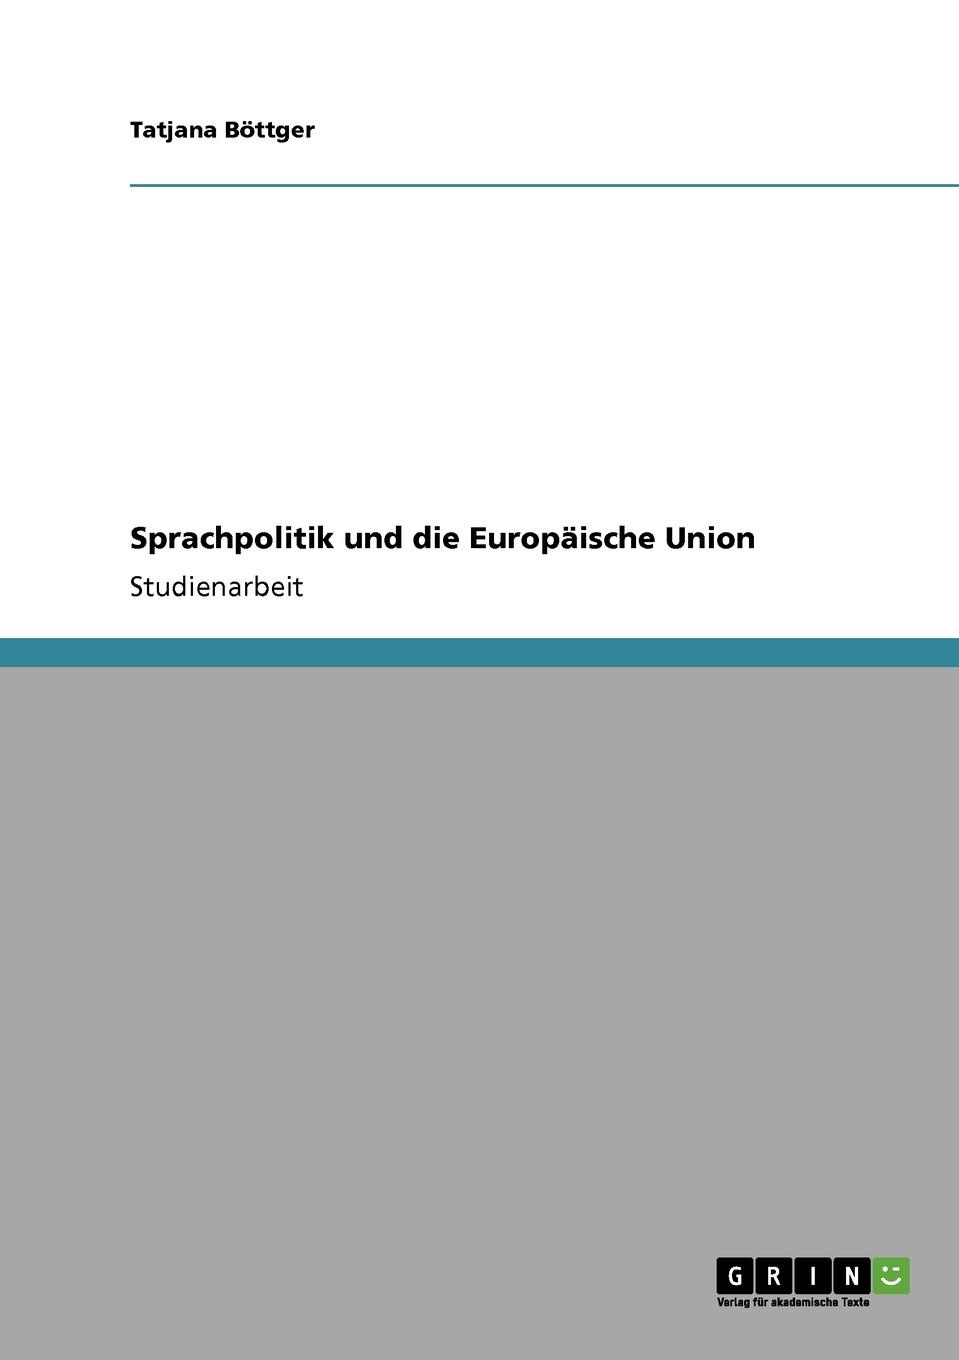 Tatjana Böttger Sprachpolitik und die Europaische Union